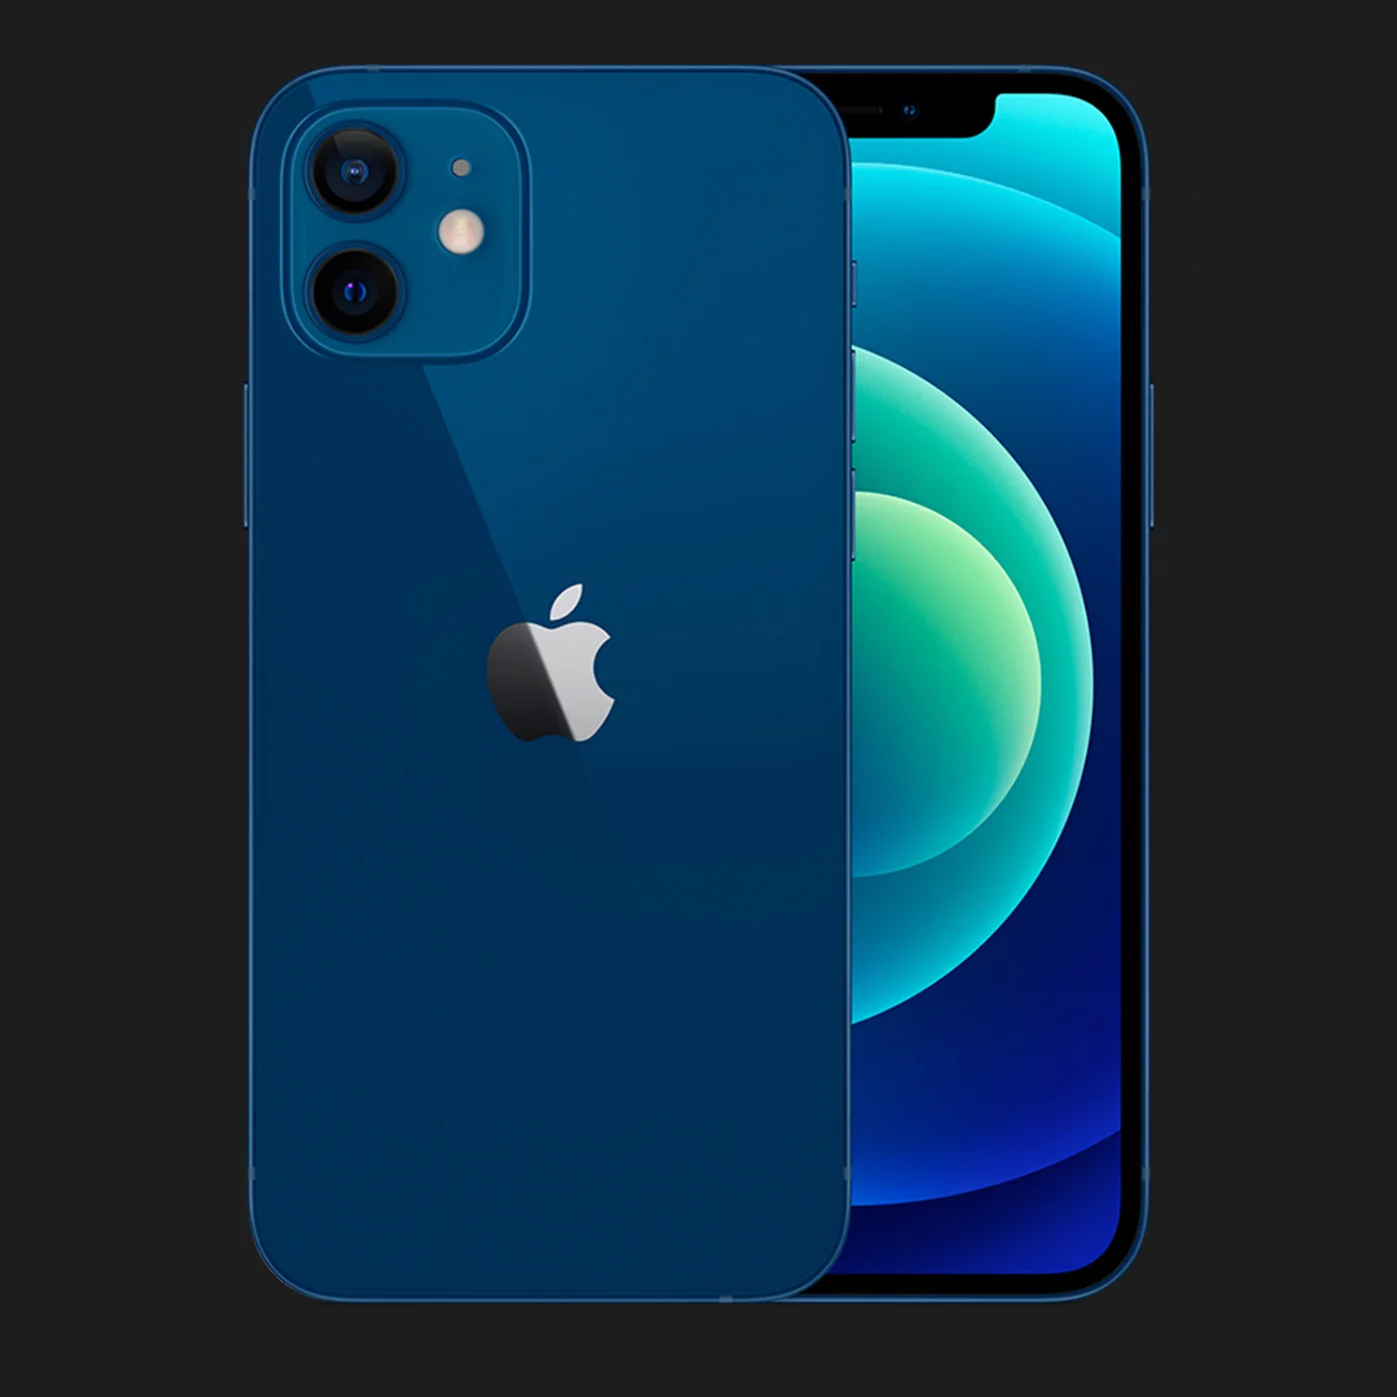 Купить Apple iPhone 12 mini 64GB (Blue) — цены ⚡, отзывы ⚡, характеристики  — ЯБКО